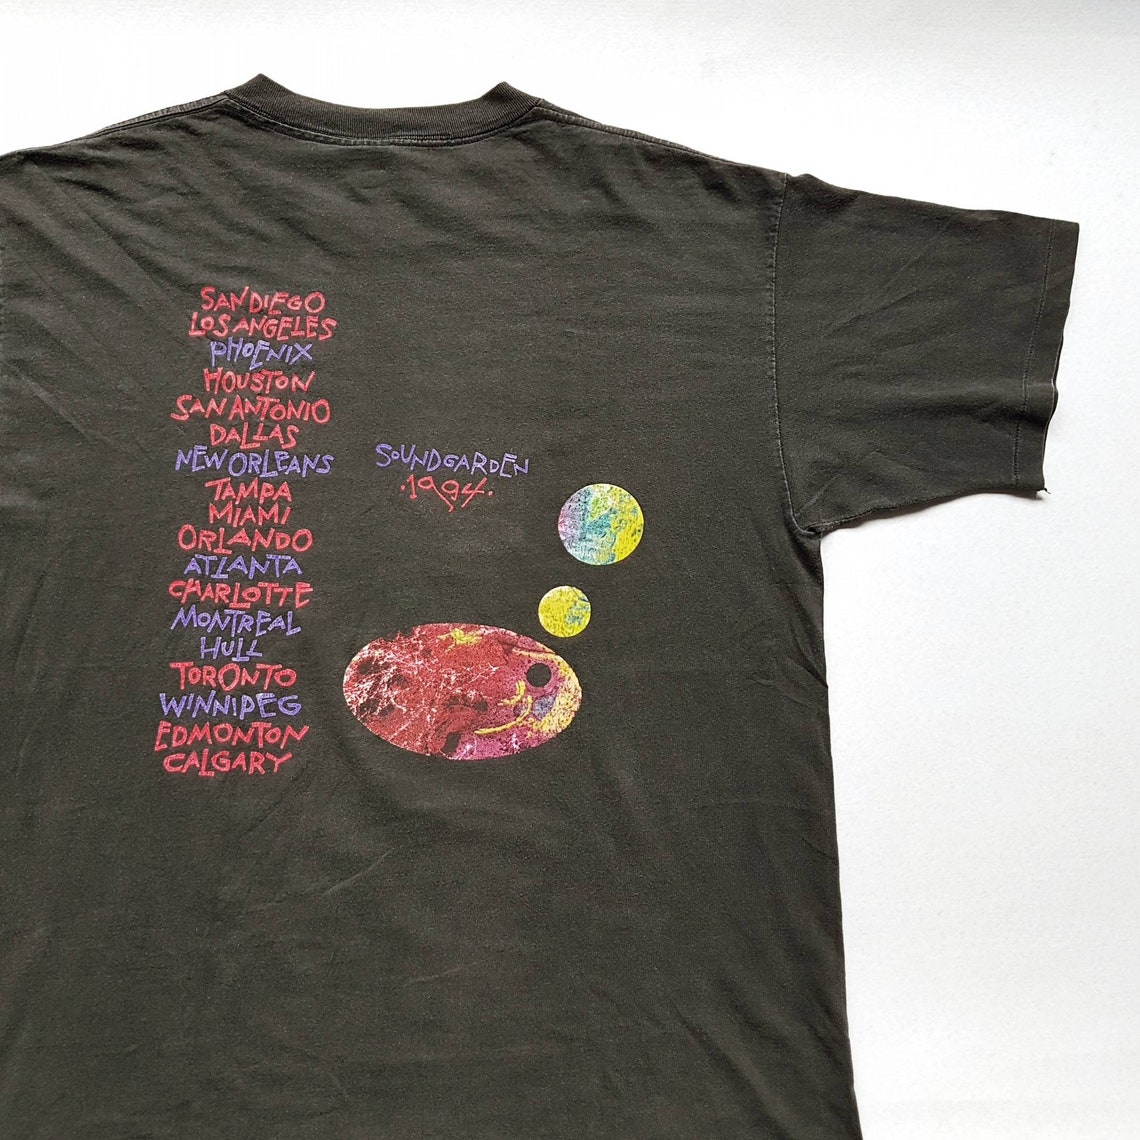 Vintage 1994 Soundgarden Superunknown Tour Camiseta tamaño XL | Etsy